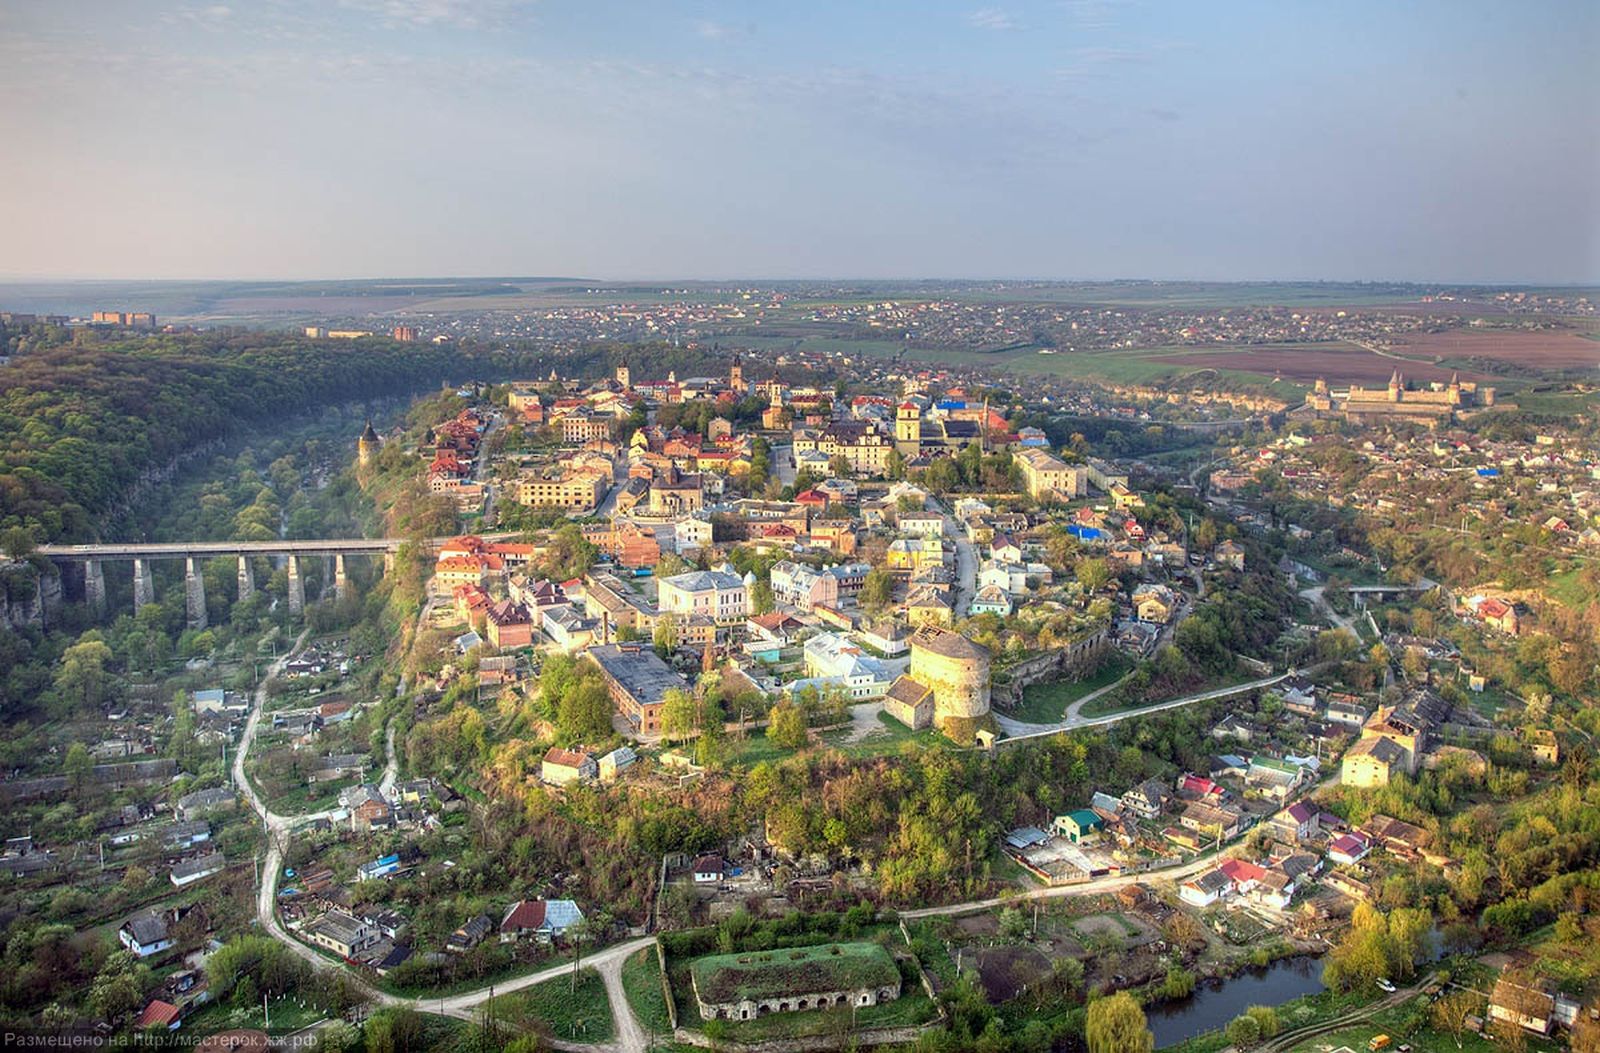  Каменец-Подольский (Украина), Старый город, вид с воздушного шара,  автор Олег Жарий